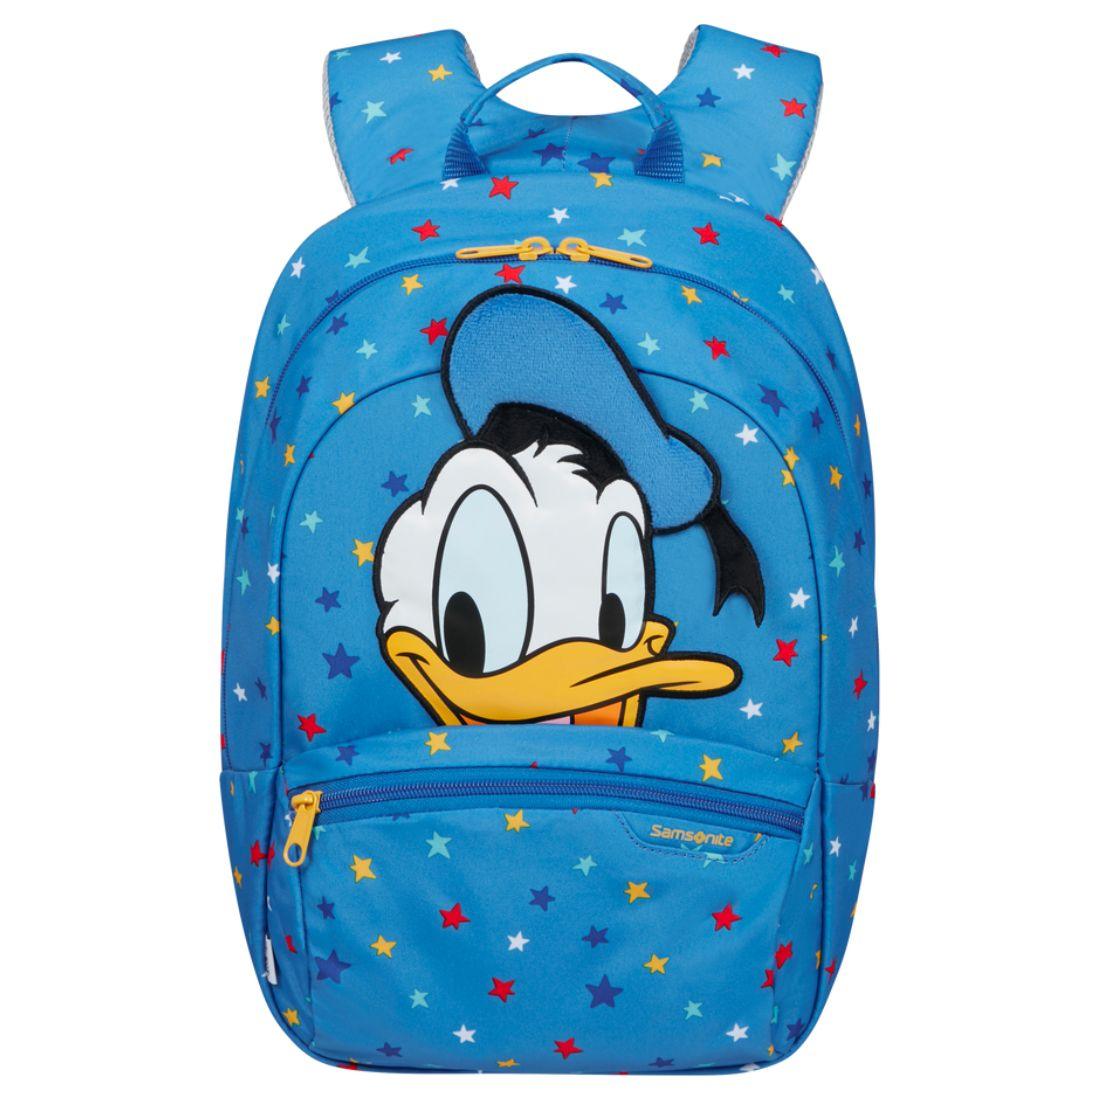 Voorkant Samsonite Disney ultimate 2.0 backpack s+ donald #kleur_donald